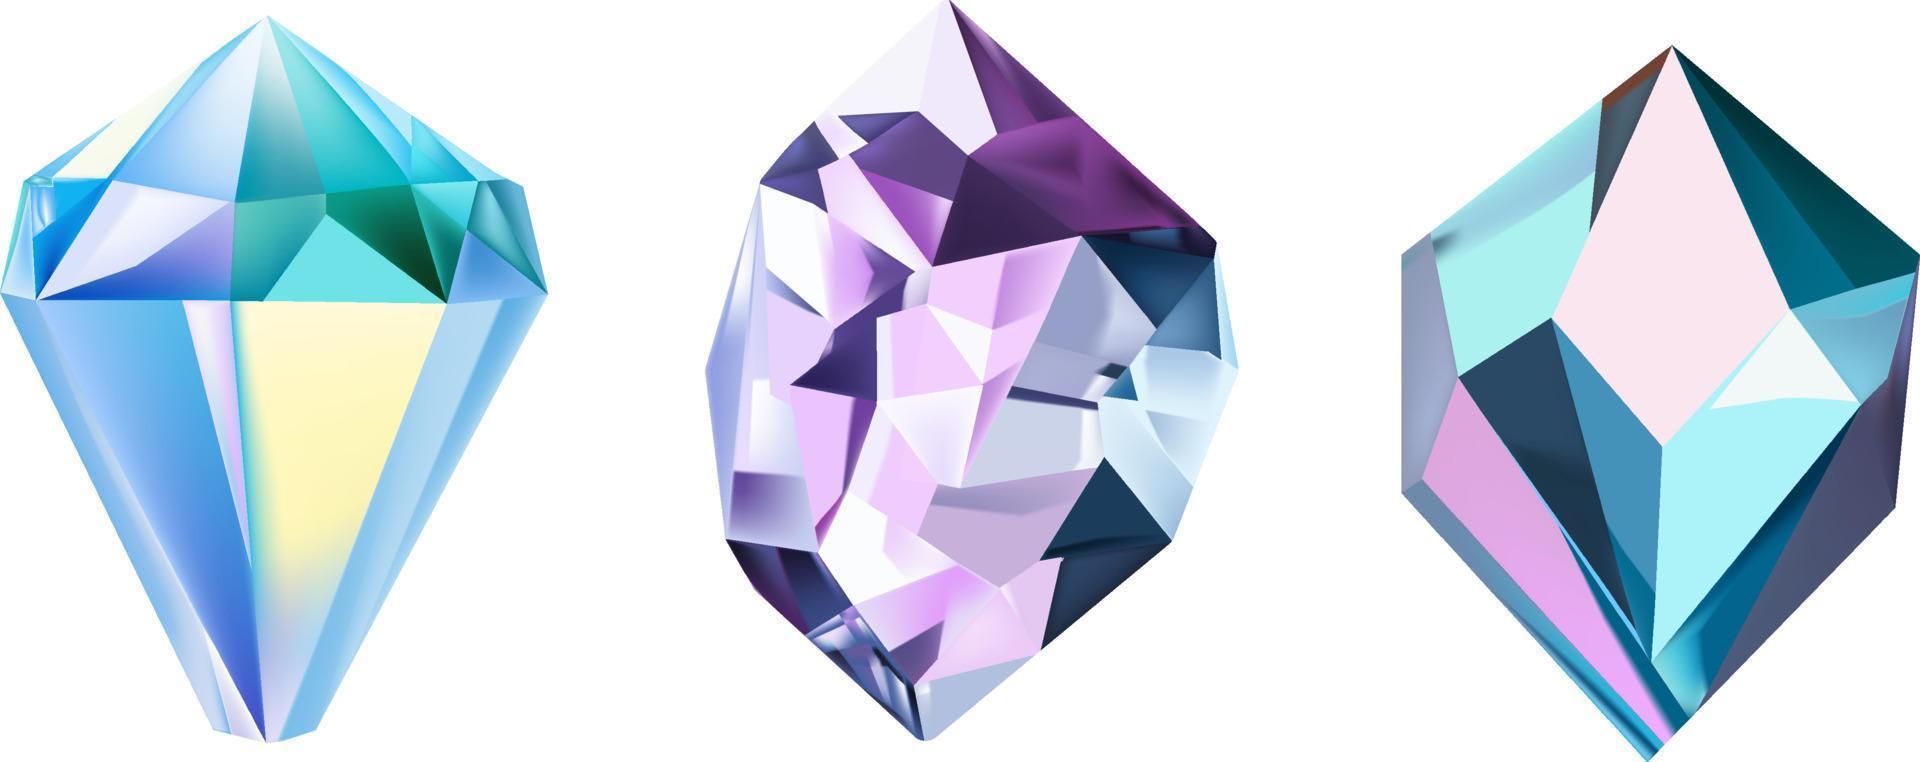 uma coleção do imagens do diamantes do vários geométrico formas, cores e tamanhos.vidro brilhante cristais com diferente tons refletindo vetor de luz realista conjunto do brilho pedra preciosa ou colorida gelo.